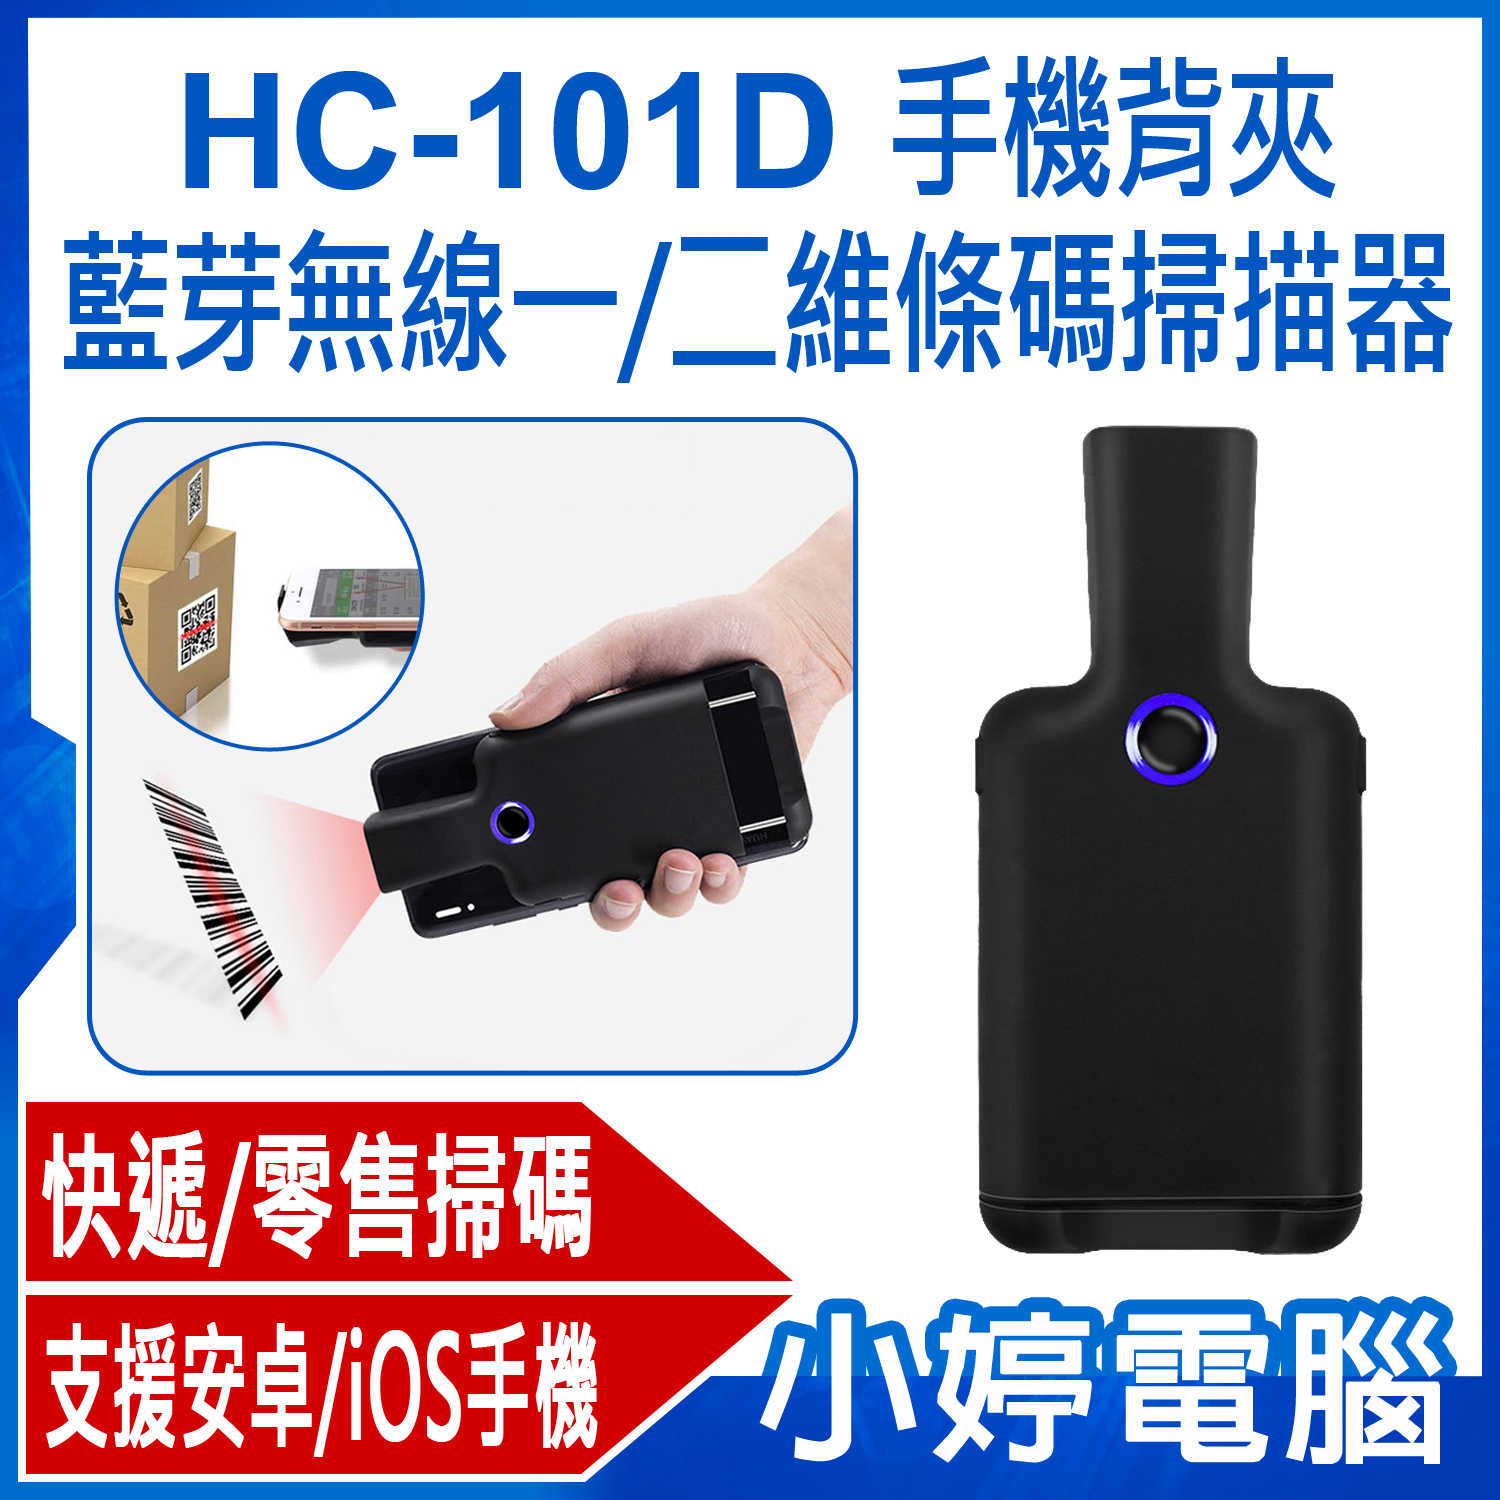 【小婷電腦】全新 HC-101D 手機背夾藍芽無線一/二維條碼掃描器 快遞/零售掃碼槍 便攜PDA 快速讀碼